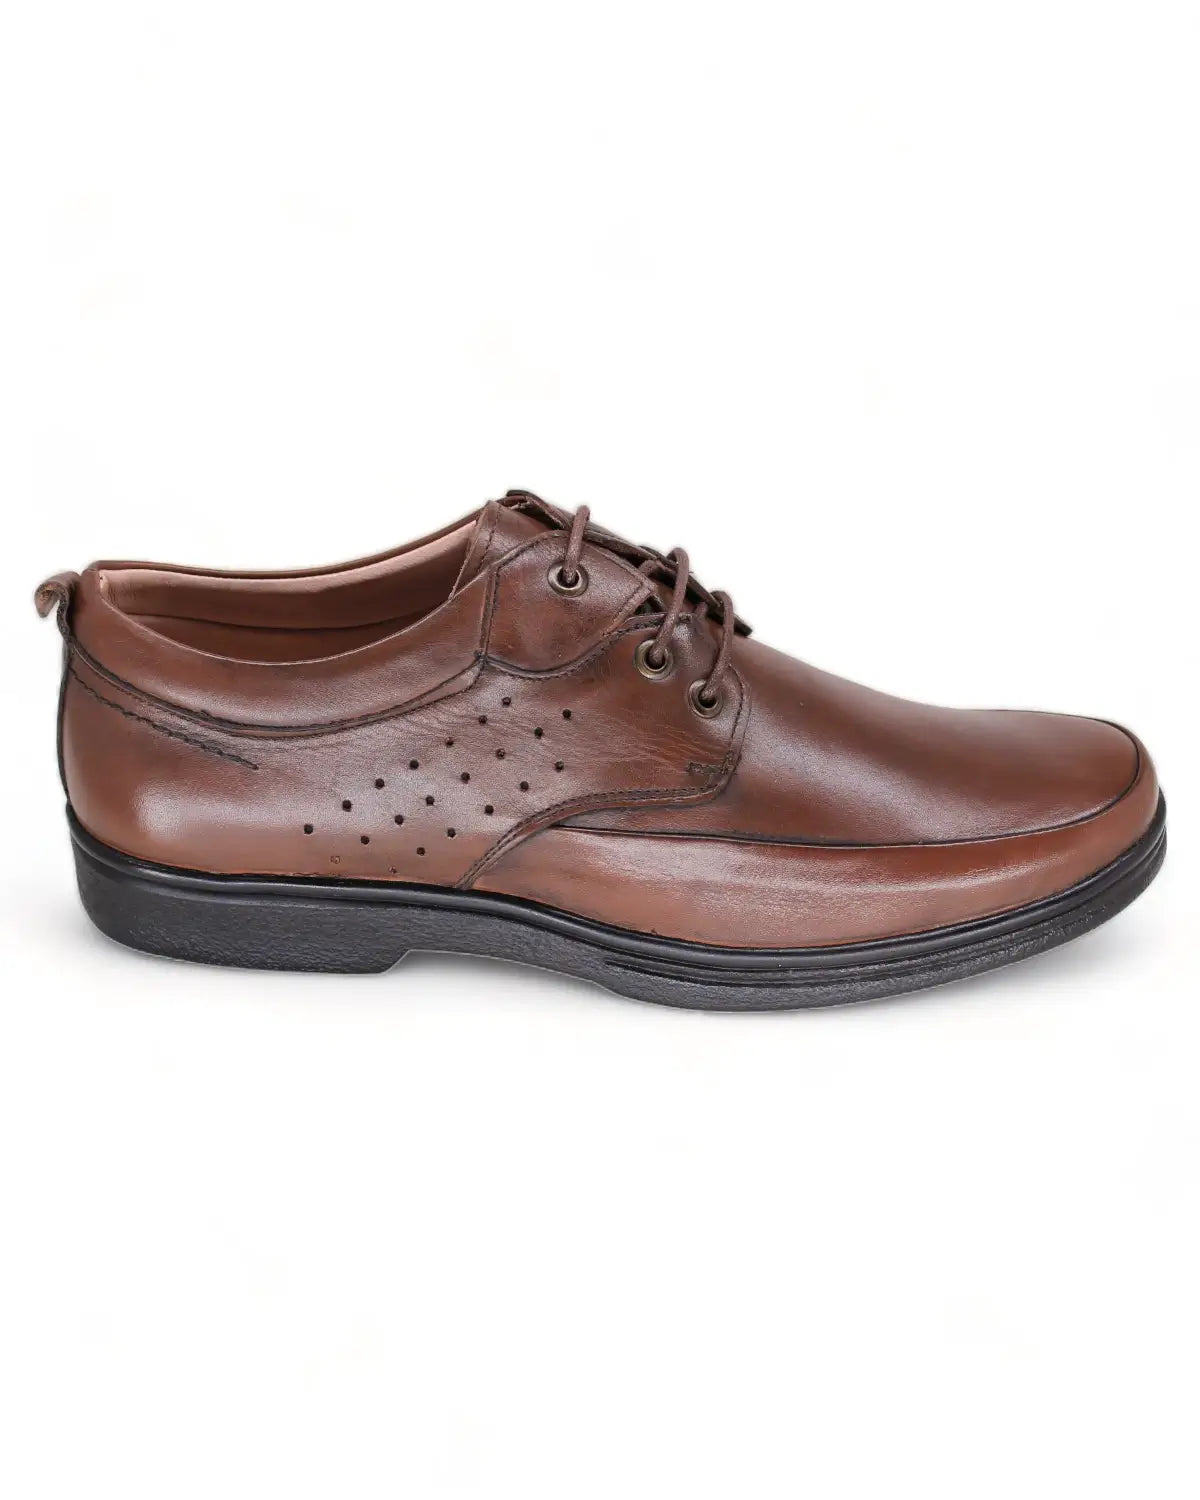 حذاء رجالي رسمي برباط - Color Brown - Side View